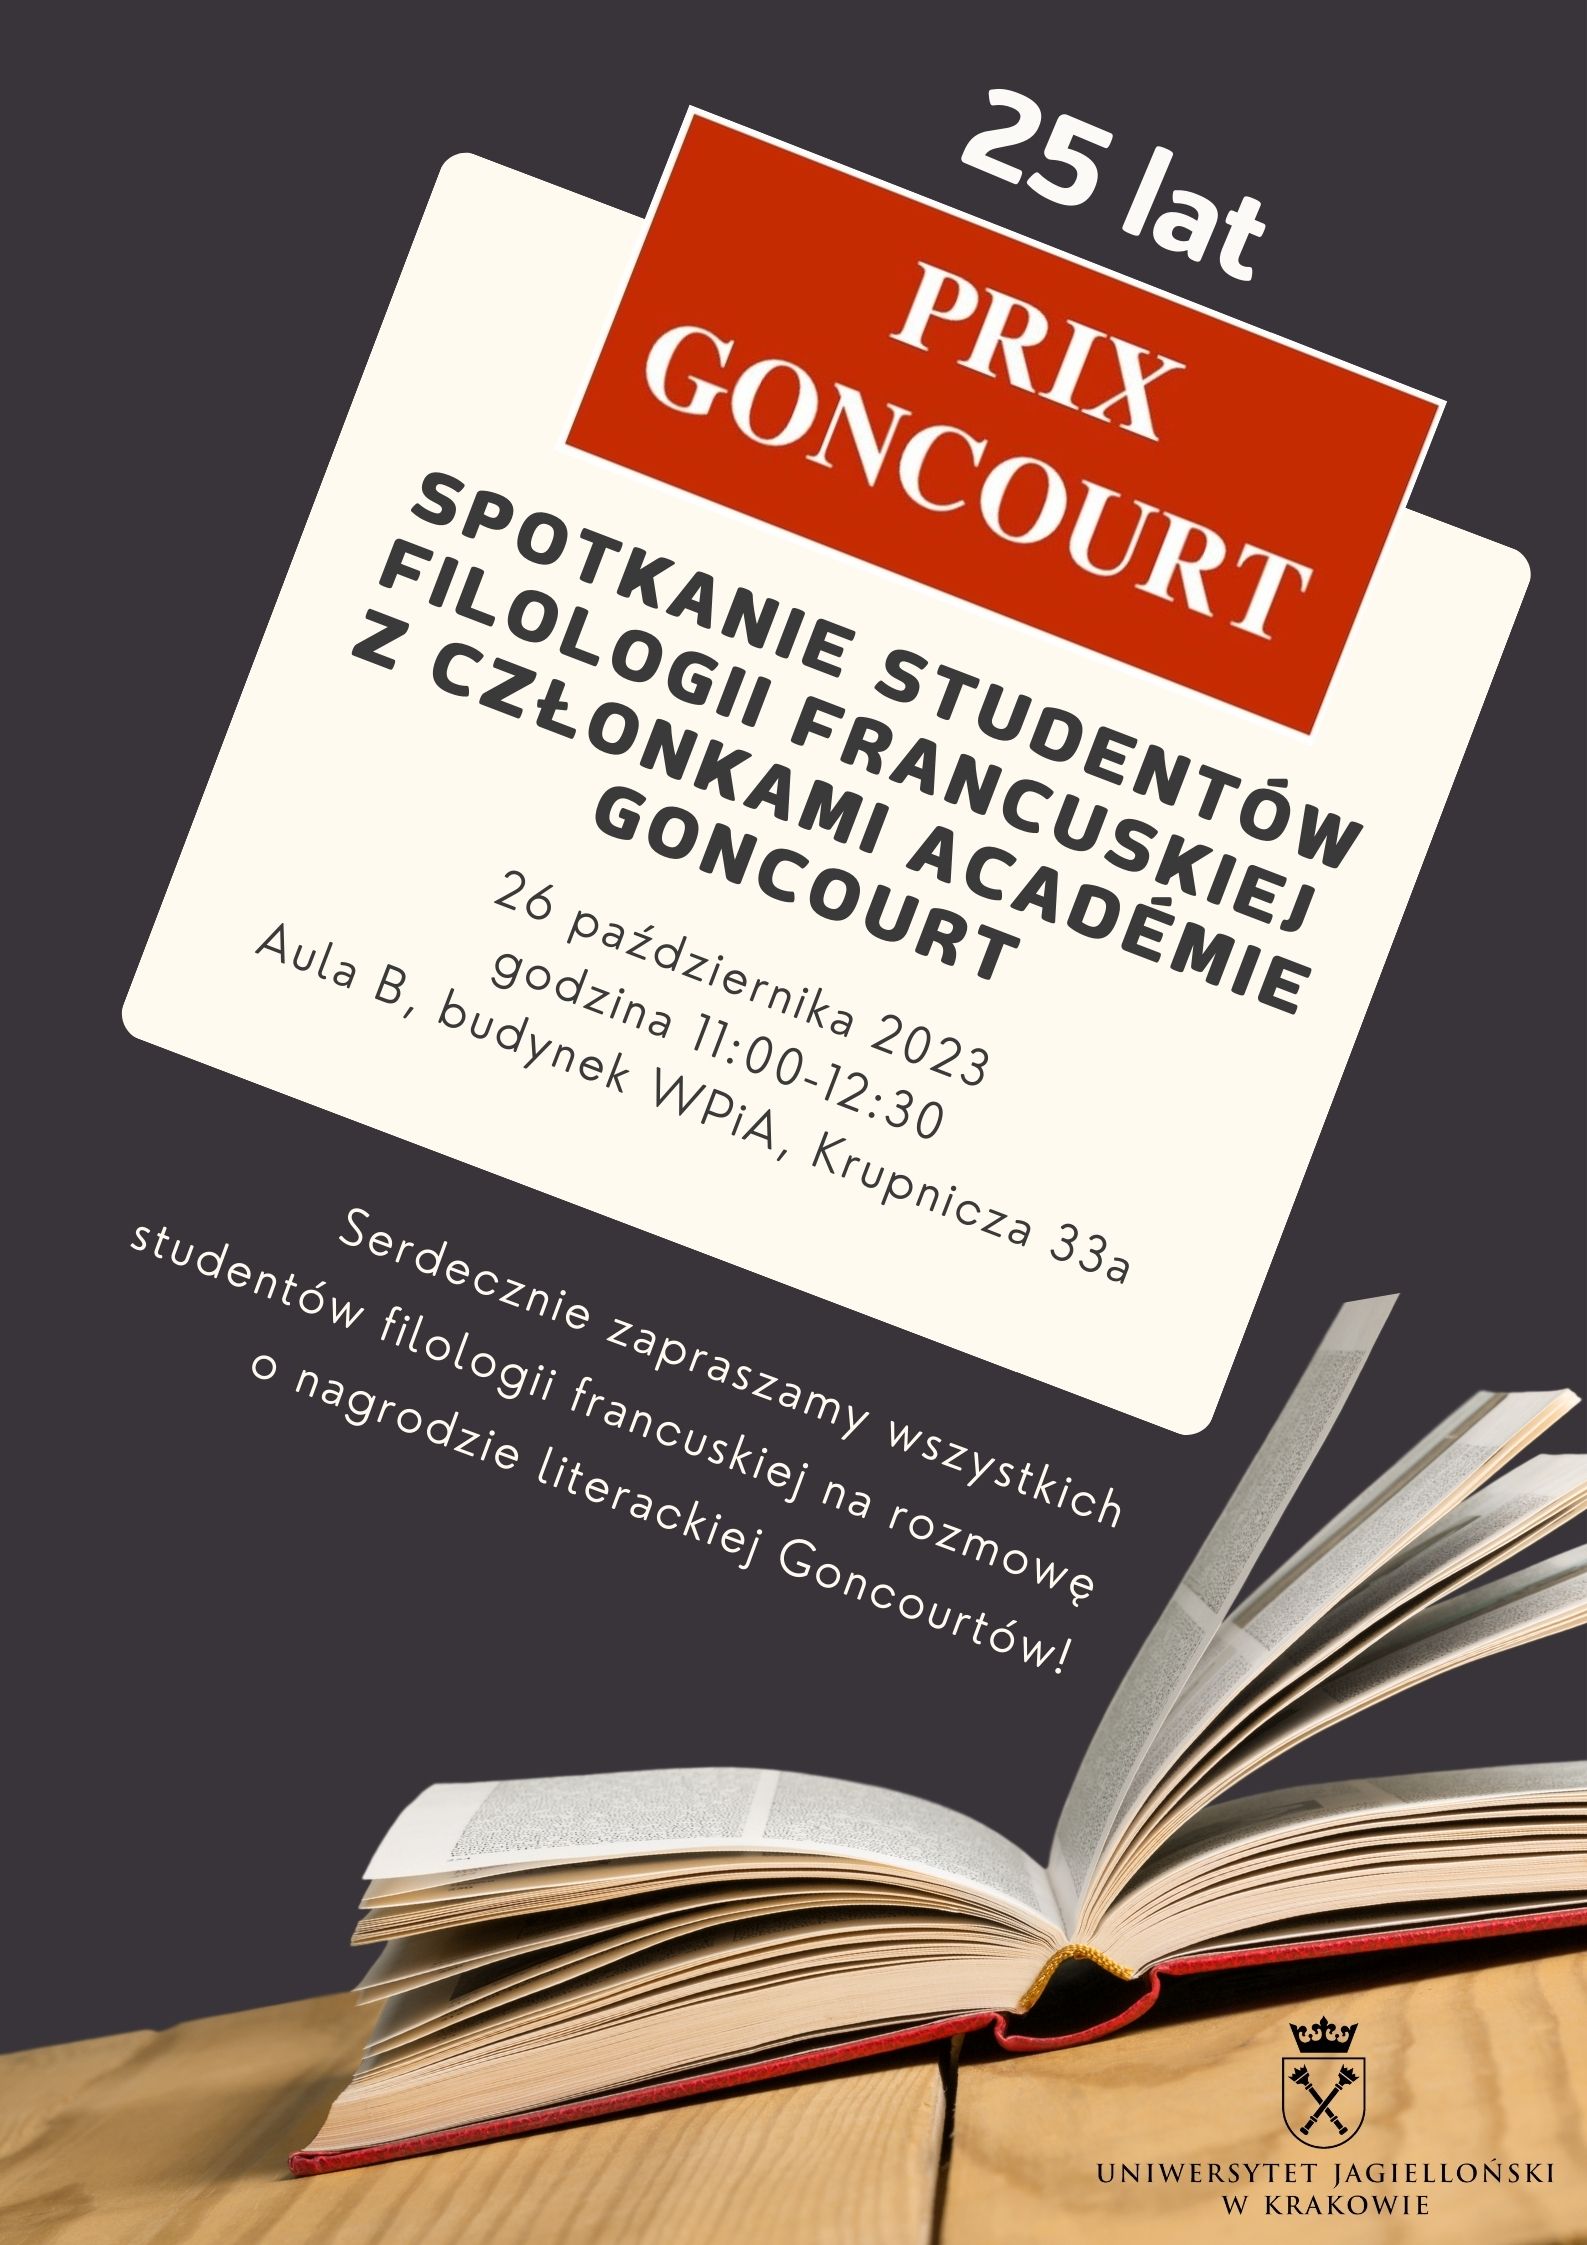 Spotkanie z członkami Académie Goncourt z okazji 25-lecia Polskiego Wyboru Nagrody Goncourtów